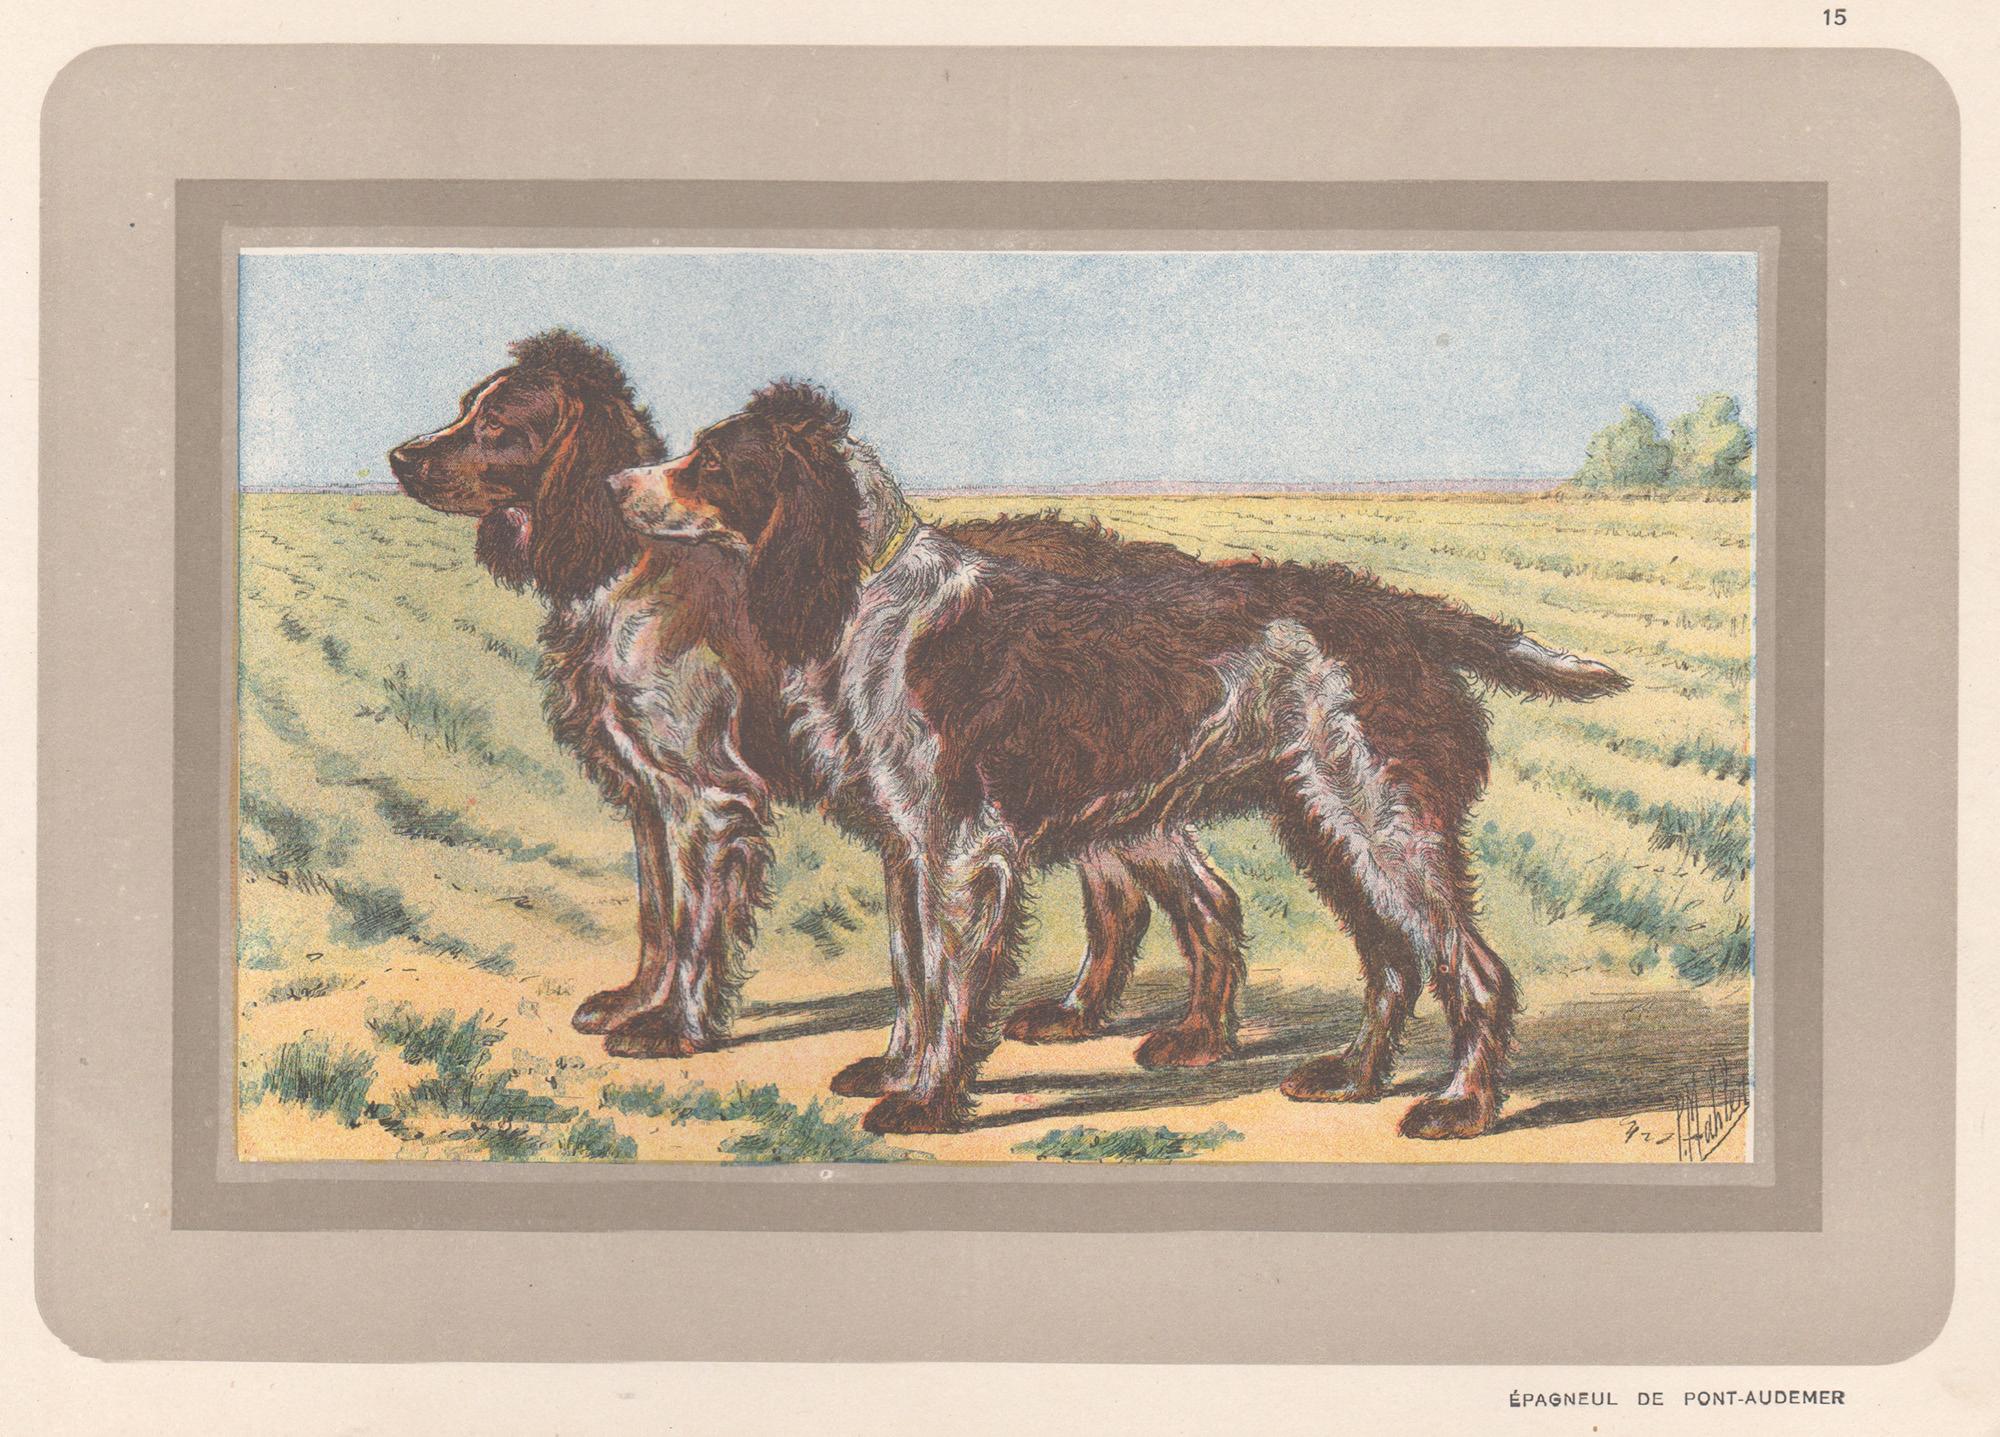 Animal Print P. Mahler - Pont-Audemer Spaniel, impression chromolithographie de chien de chasse français, années 1930